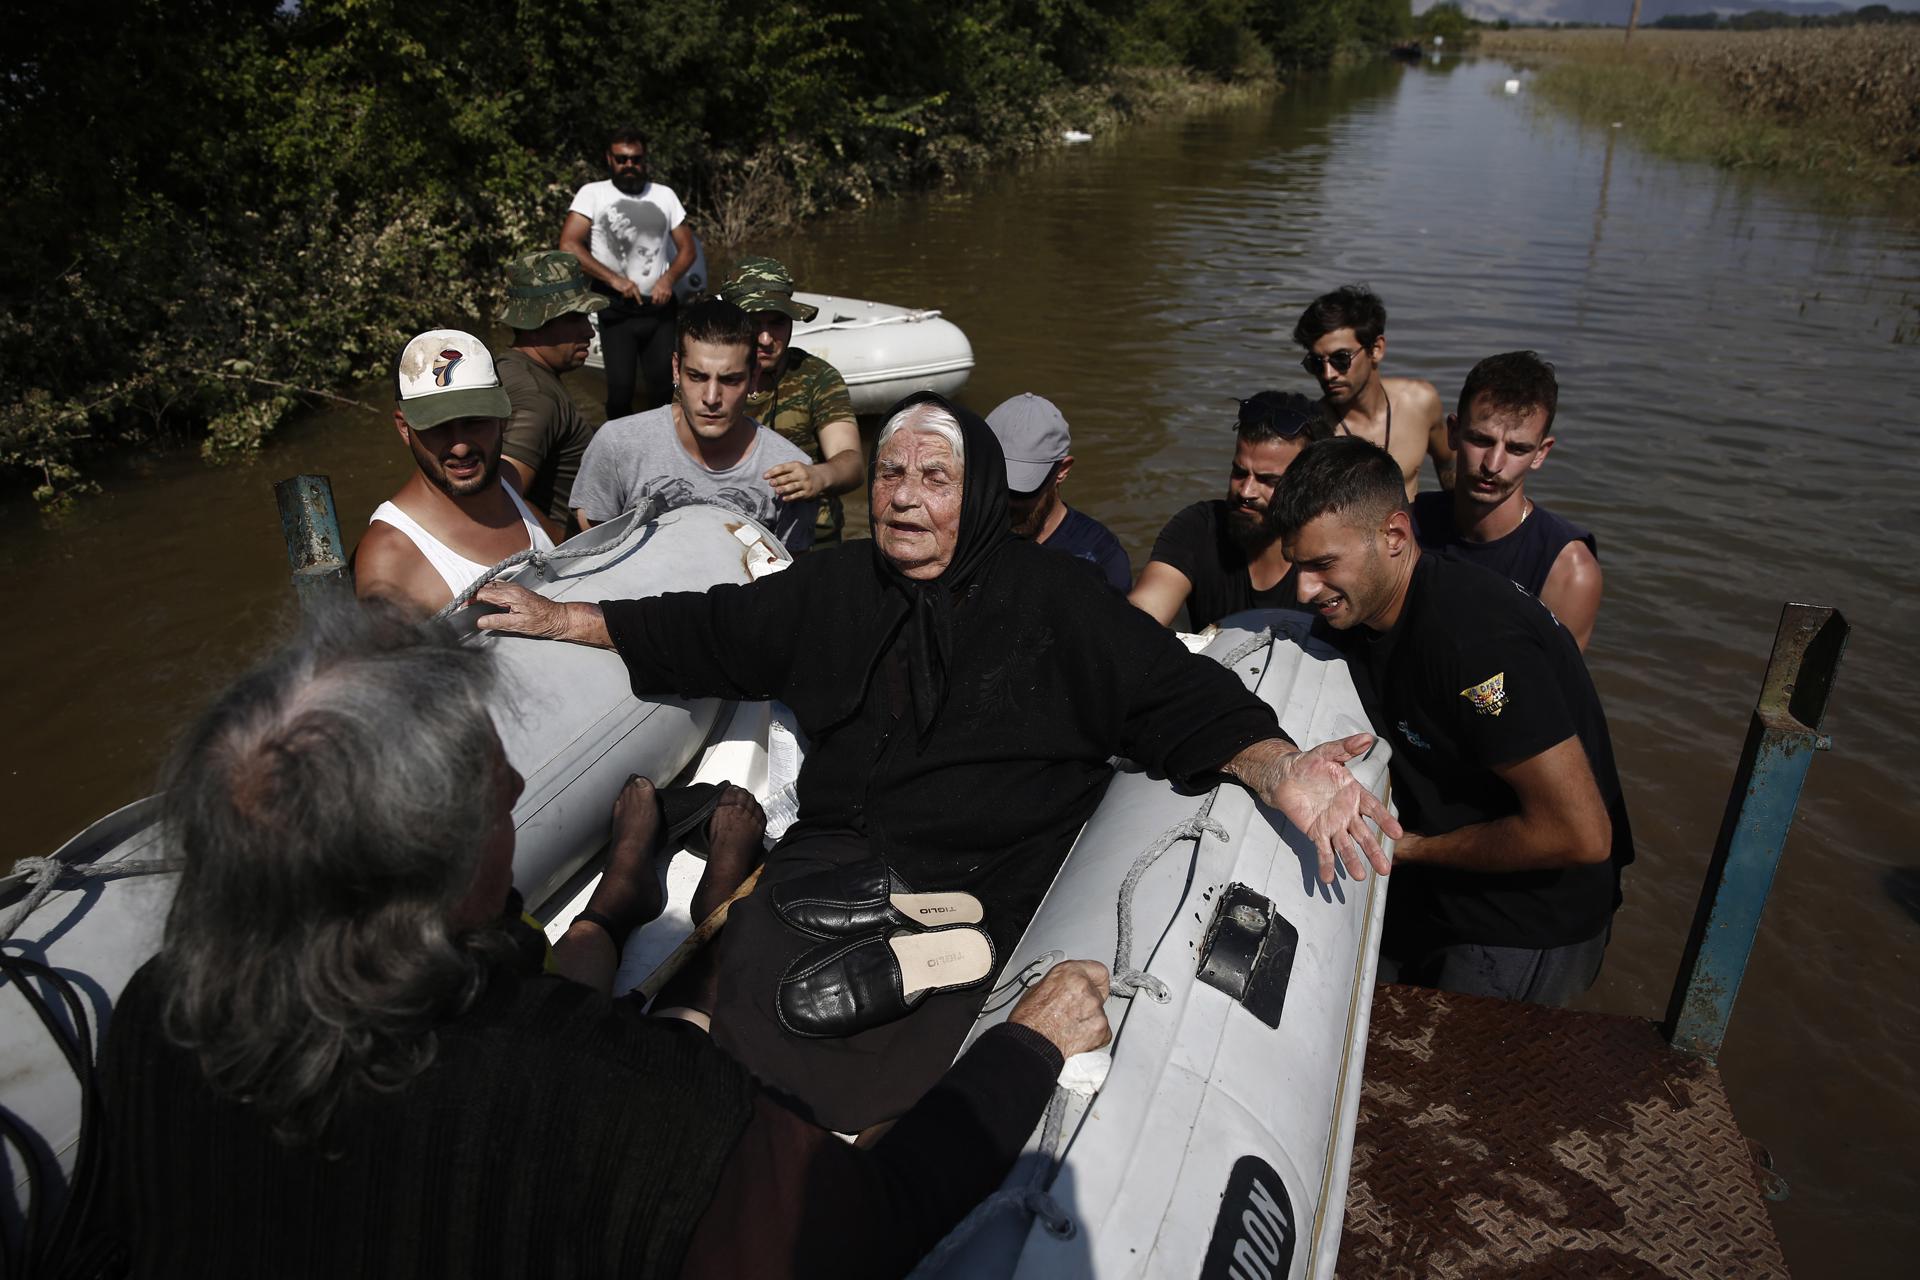 A rescue team helps flood-stranded people on a rubber boat in an area near Koskina in Karditsa, Greece, 09 September 2023 (Issued 10 September 2023). EFE/EPA/YANNIS KOLESIDIS